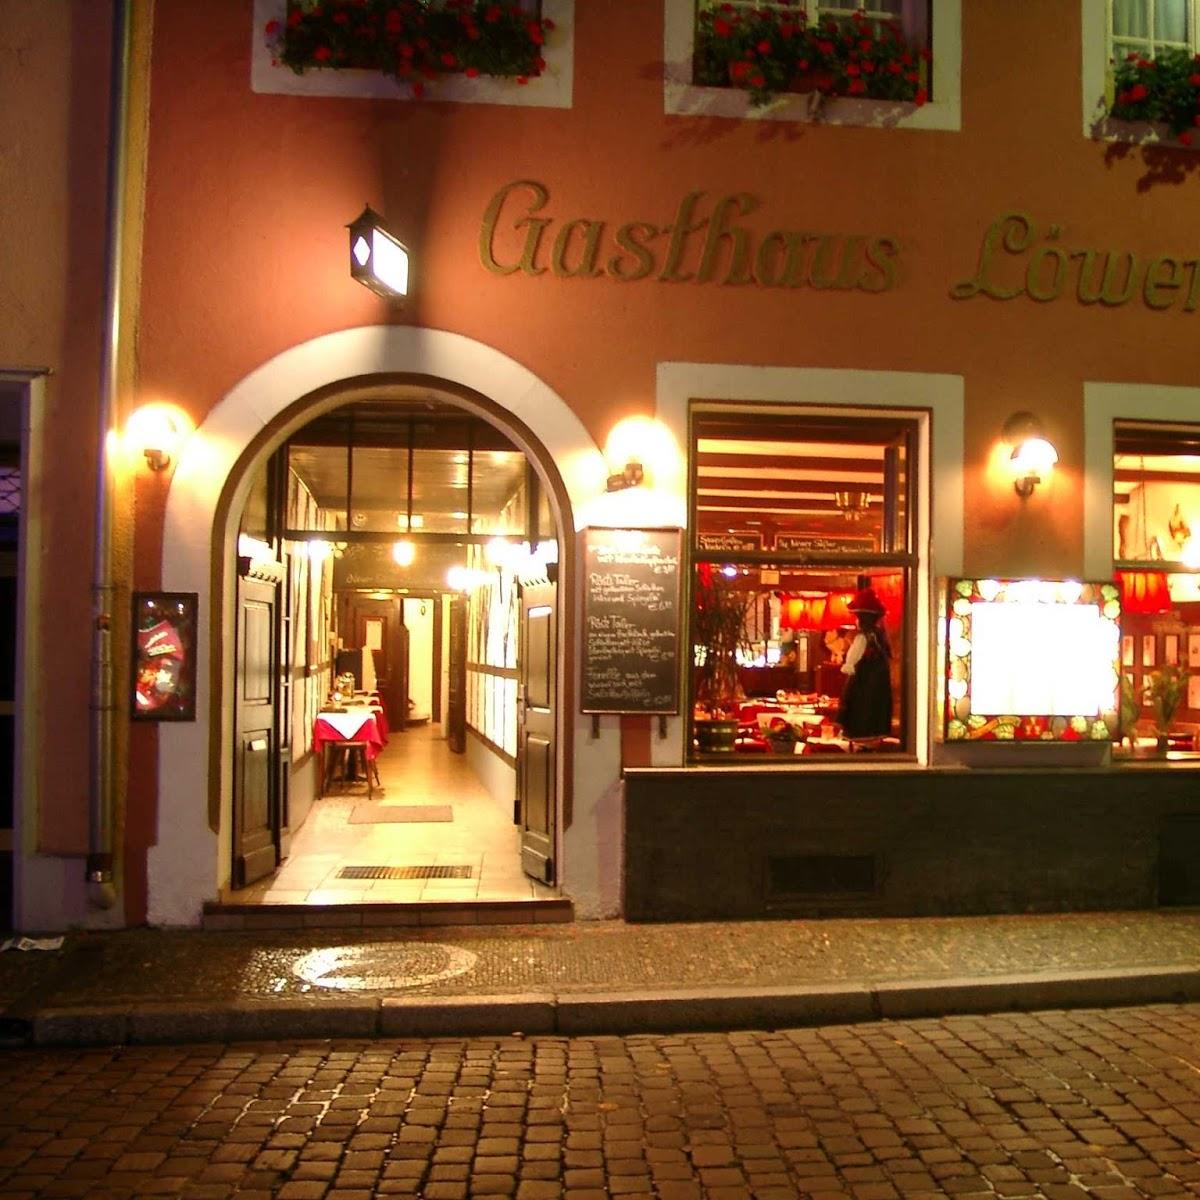 Restaurant "Gasthaus Löwen - Altstadt" in Freiburg im Breisgau